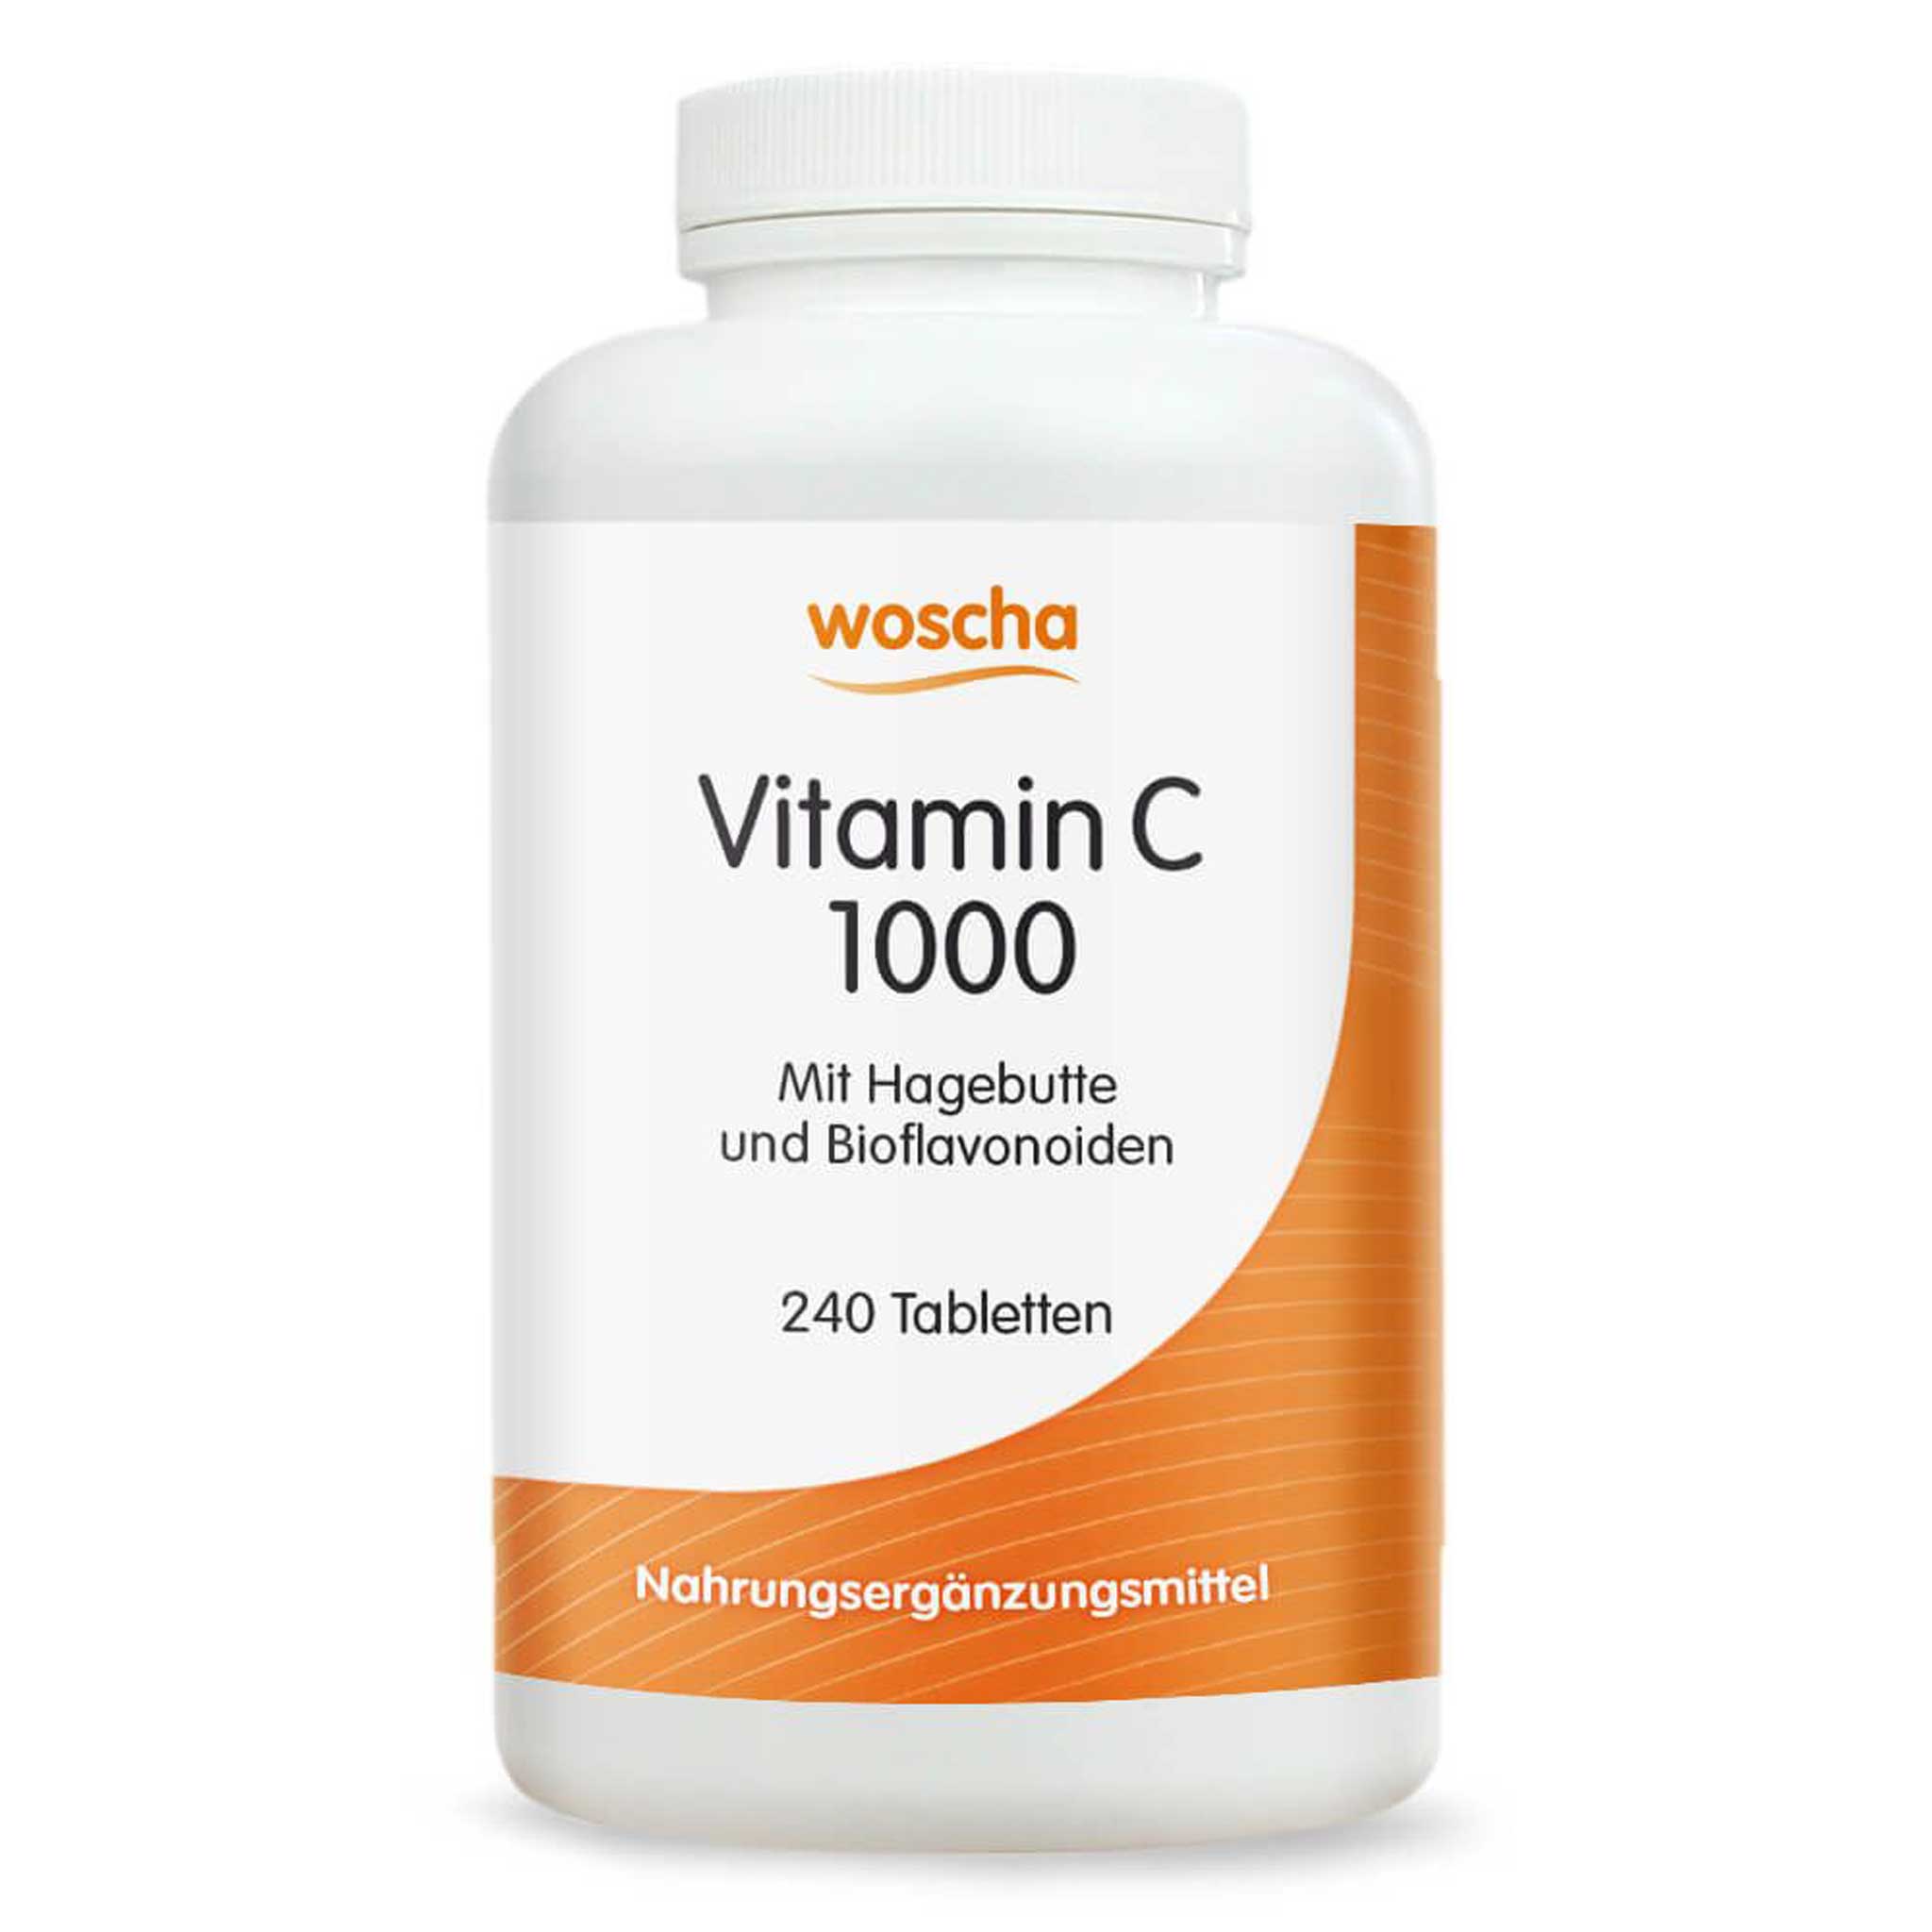 Woscha Vitamin C 1000 mit Hagebutte von podo medi beinhaltet 240 Tabletten